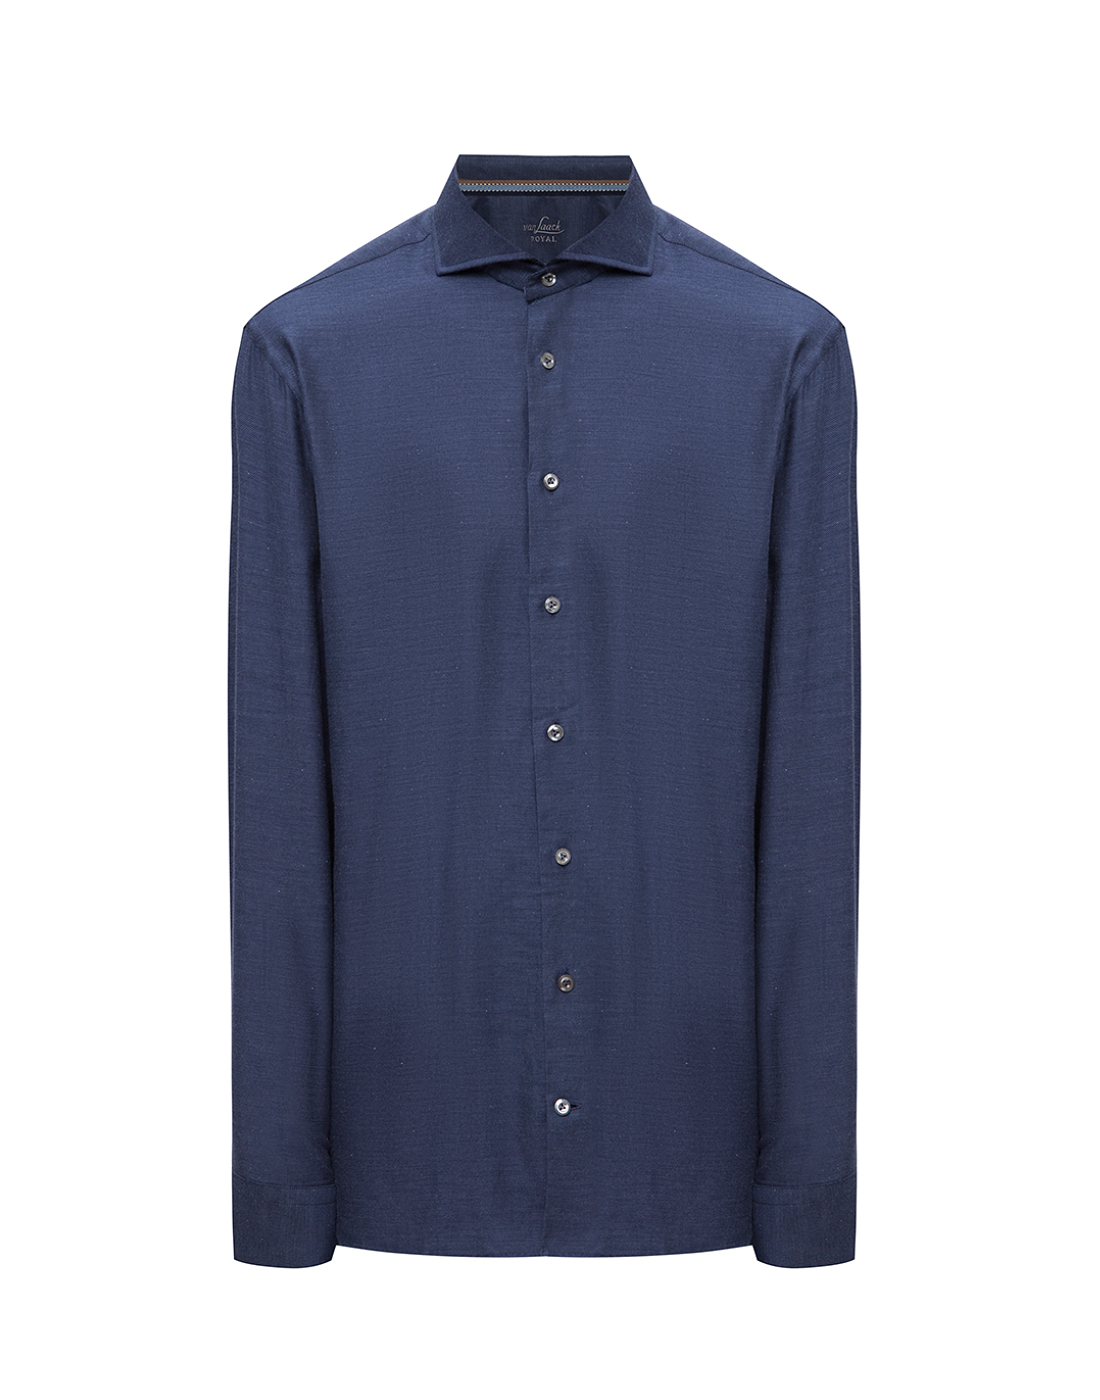 Мужская синяя рубашка Van Laack S156267/780-1